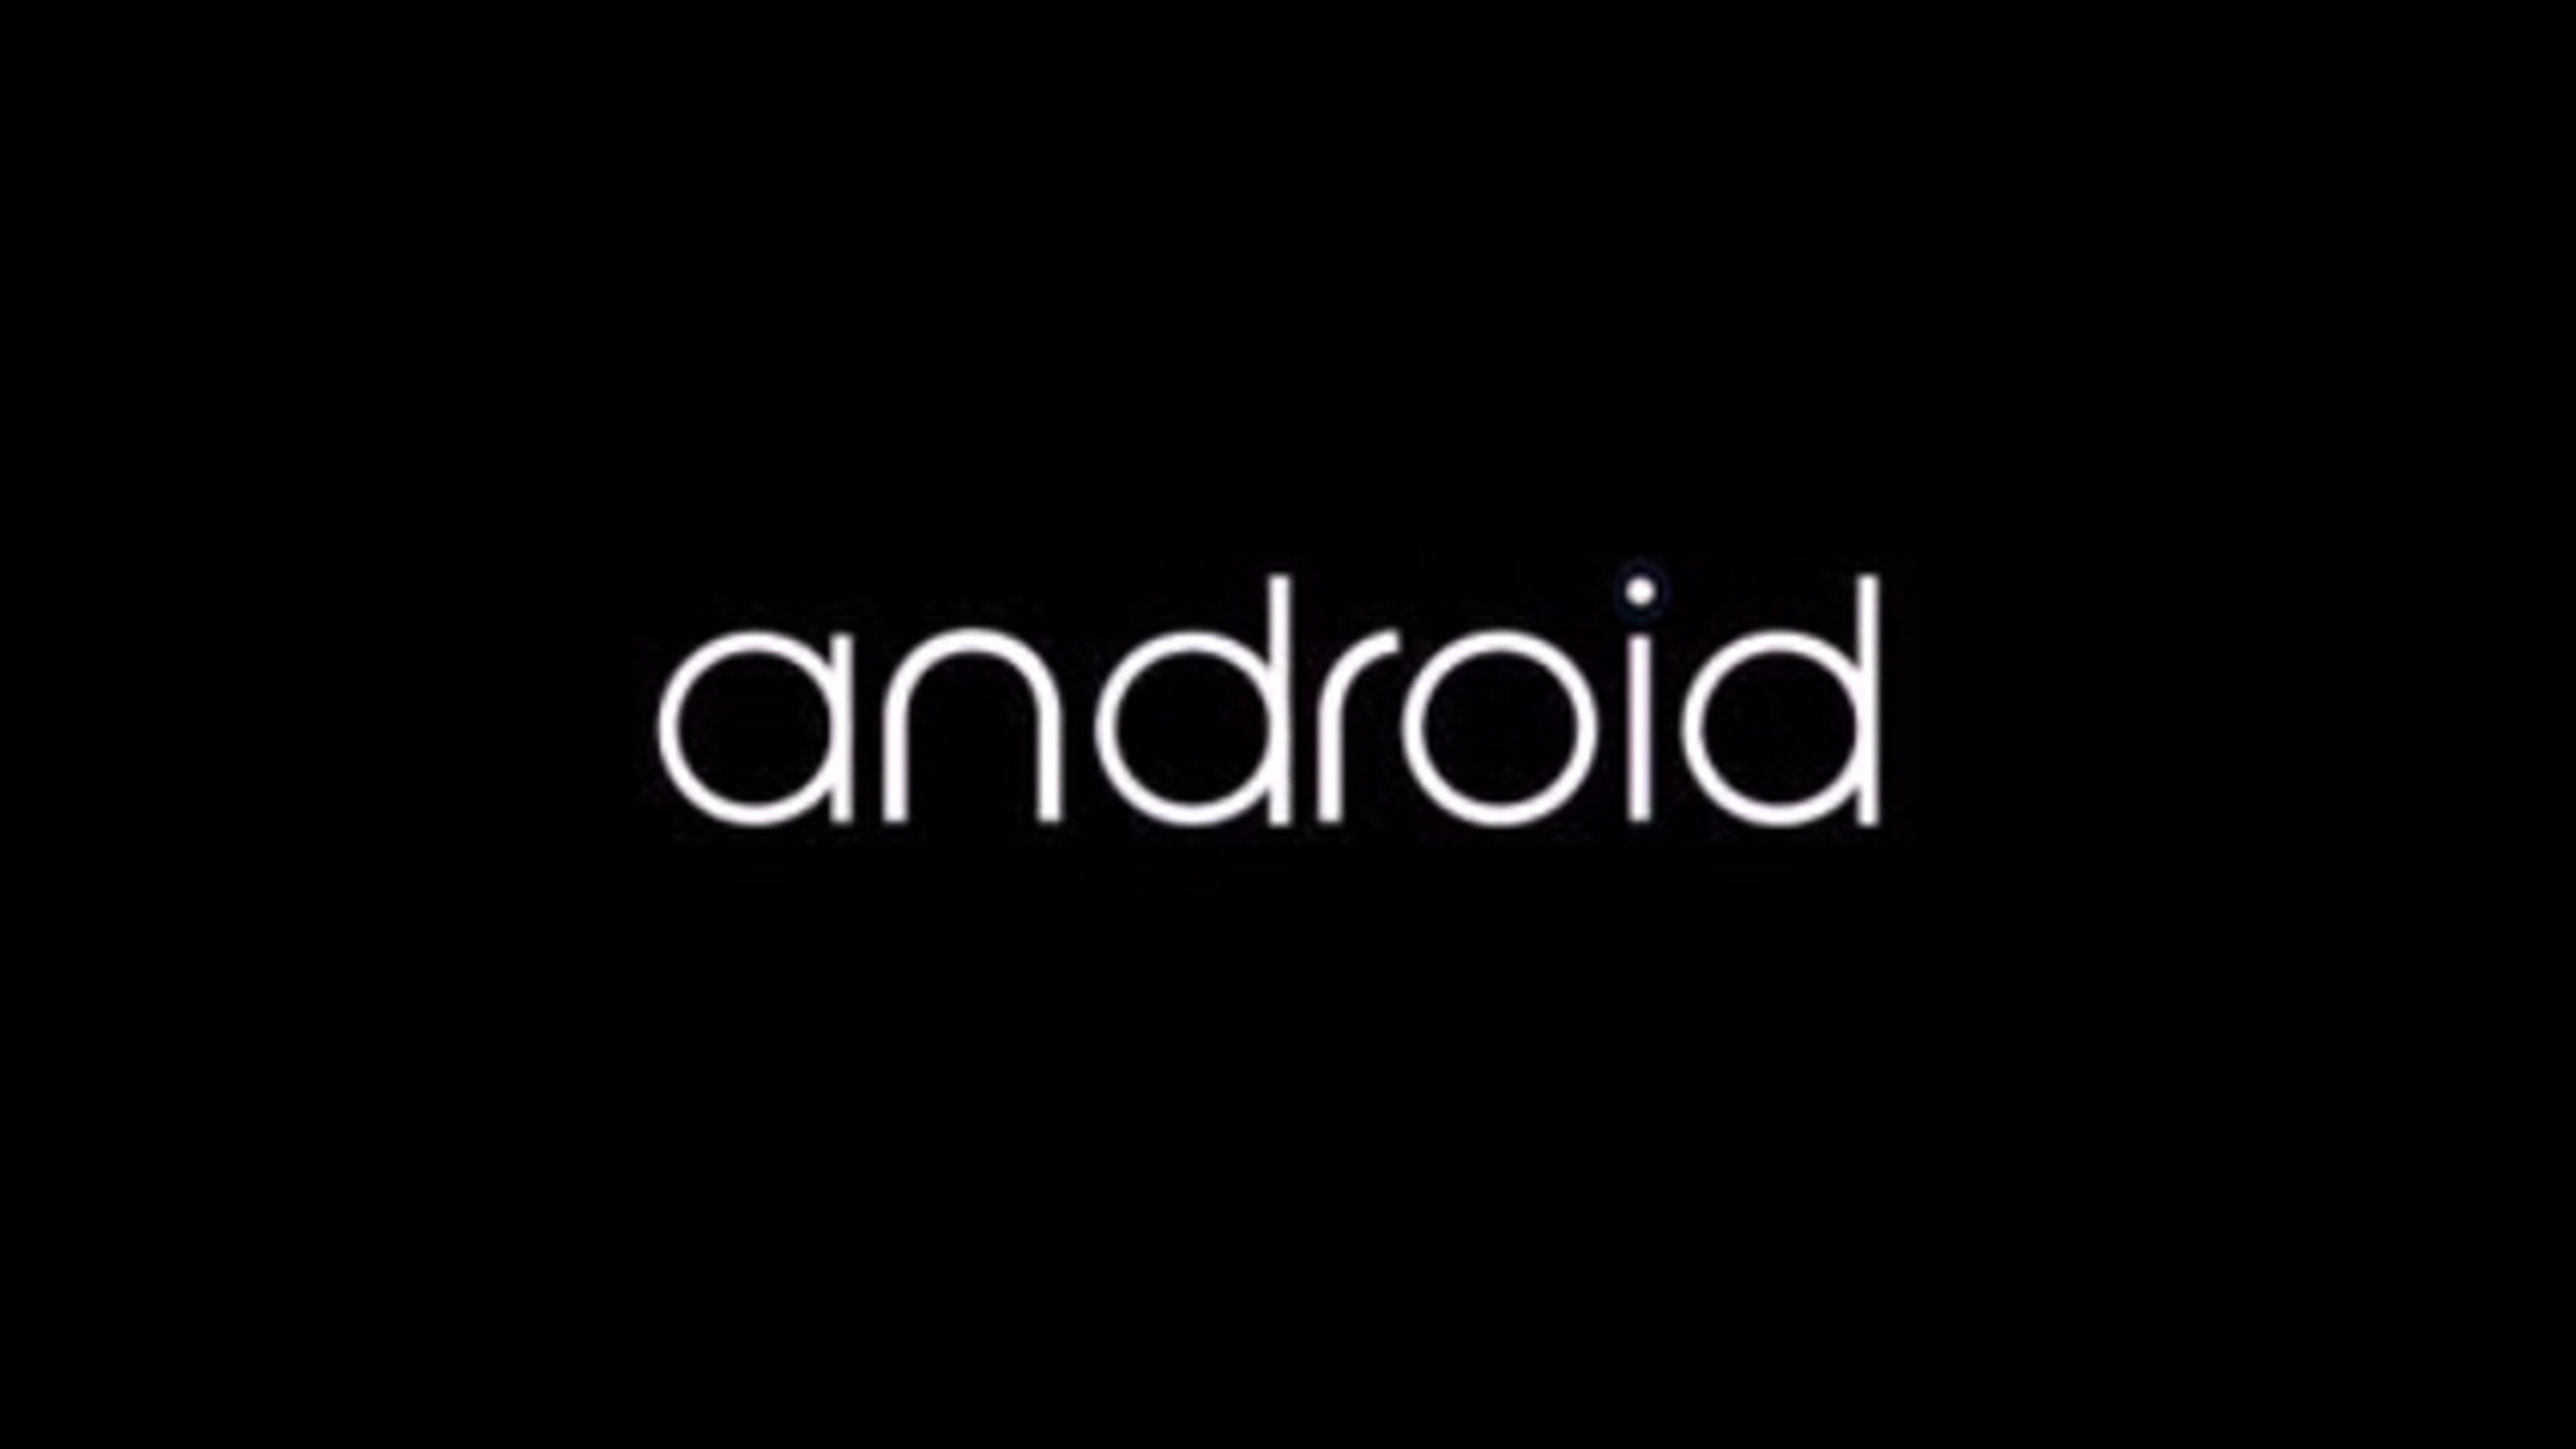 75+] Android Logo Wallpaper - WallpaperSafari